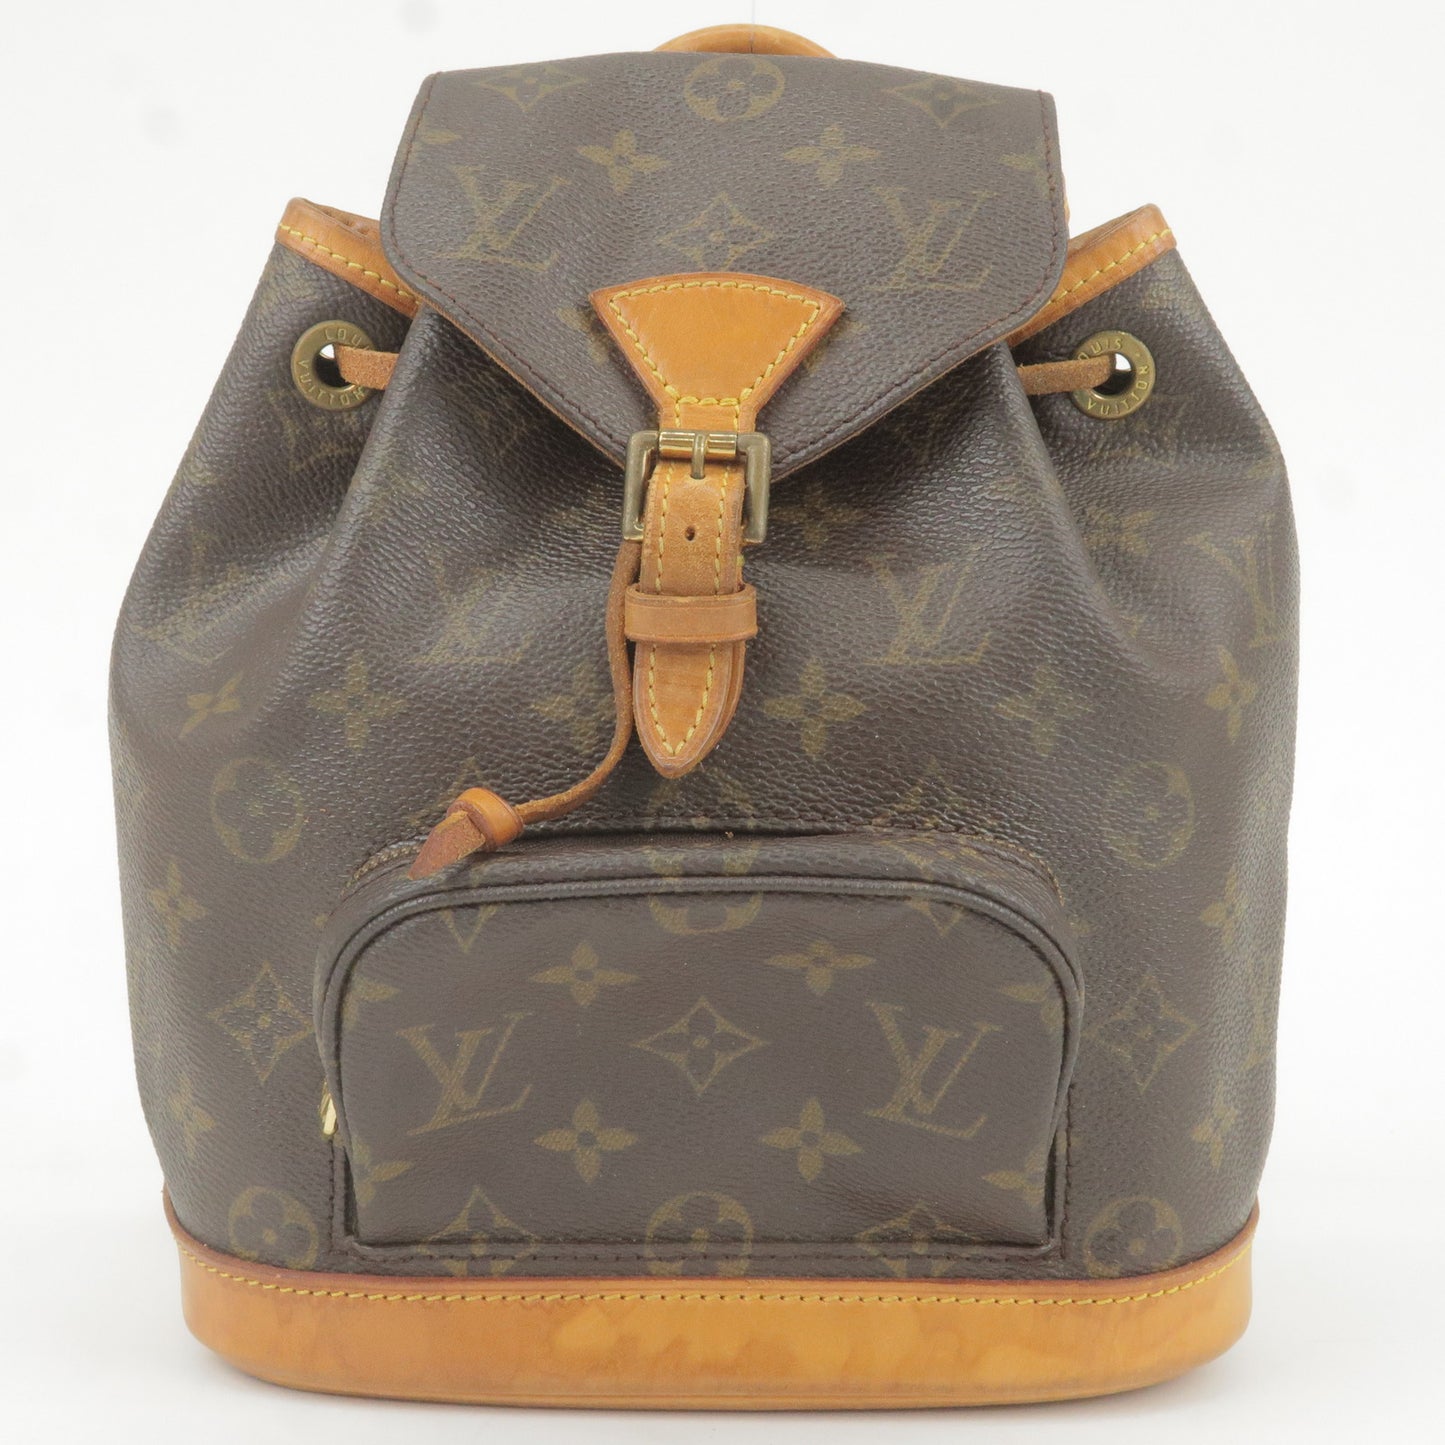 Authentic Louis Vuitton 2009 Double Jeu Neo Alma Handbag Buy it Now